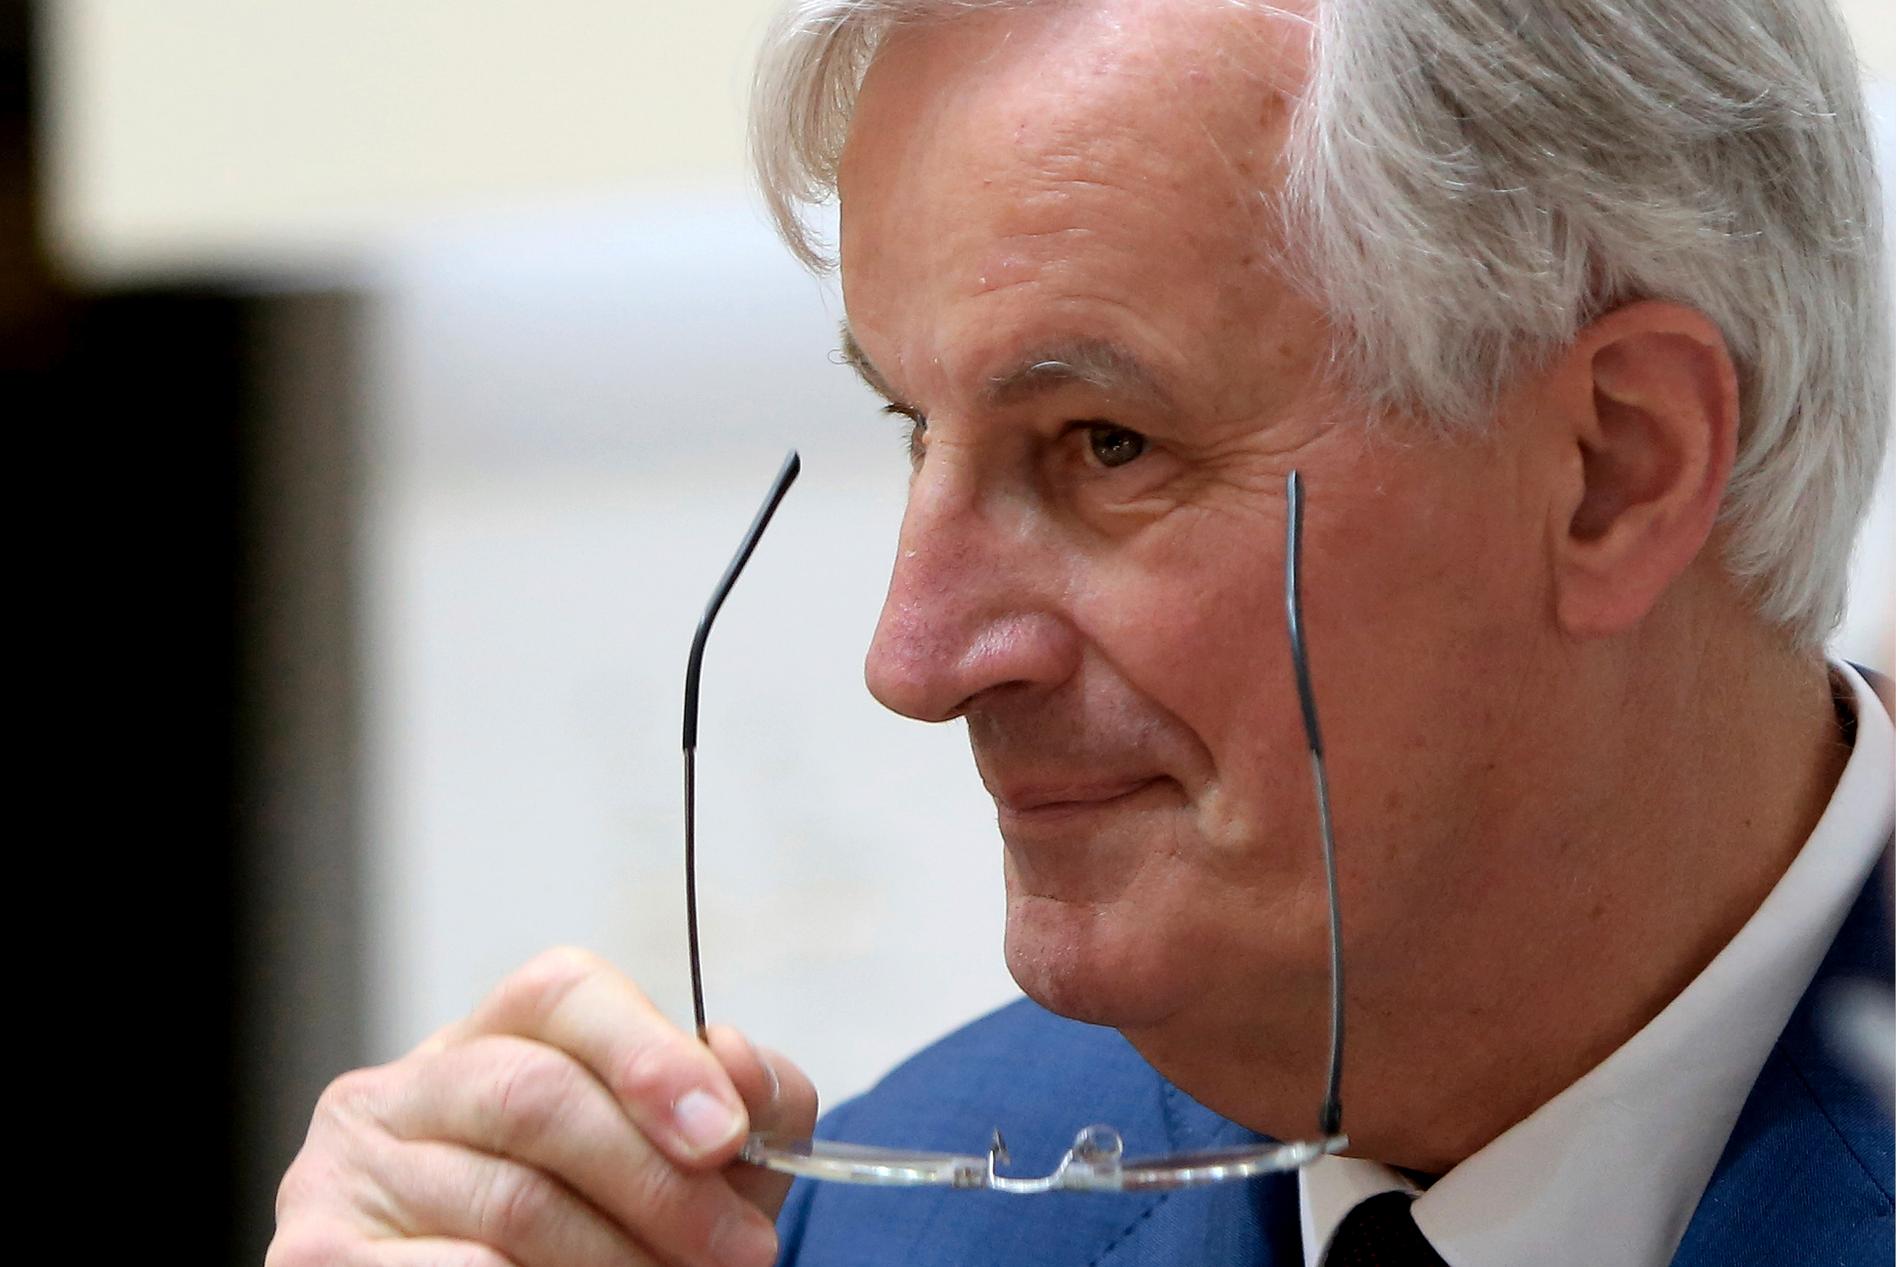 Frankrikes förre jordbruks- och utrikesminister Michel Barnier har varit framgångsrik som EU:s chefsförhandlare om brexit. Kanske kan det föra honom till posten som ordförande i EU-kommissionen. Arkivfoto.